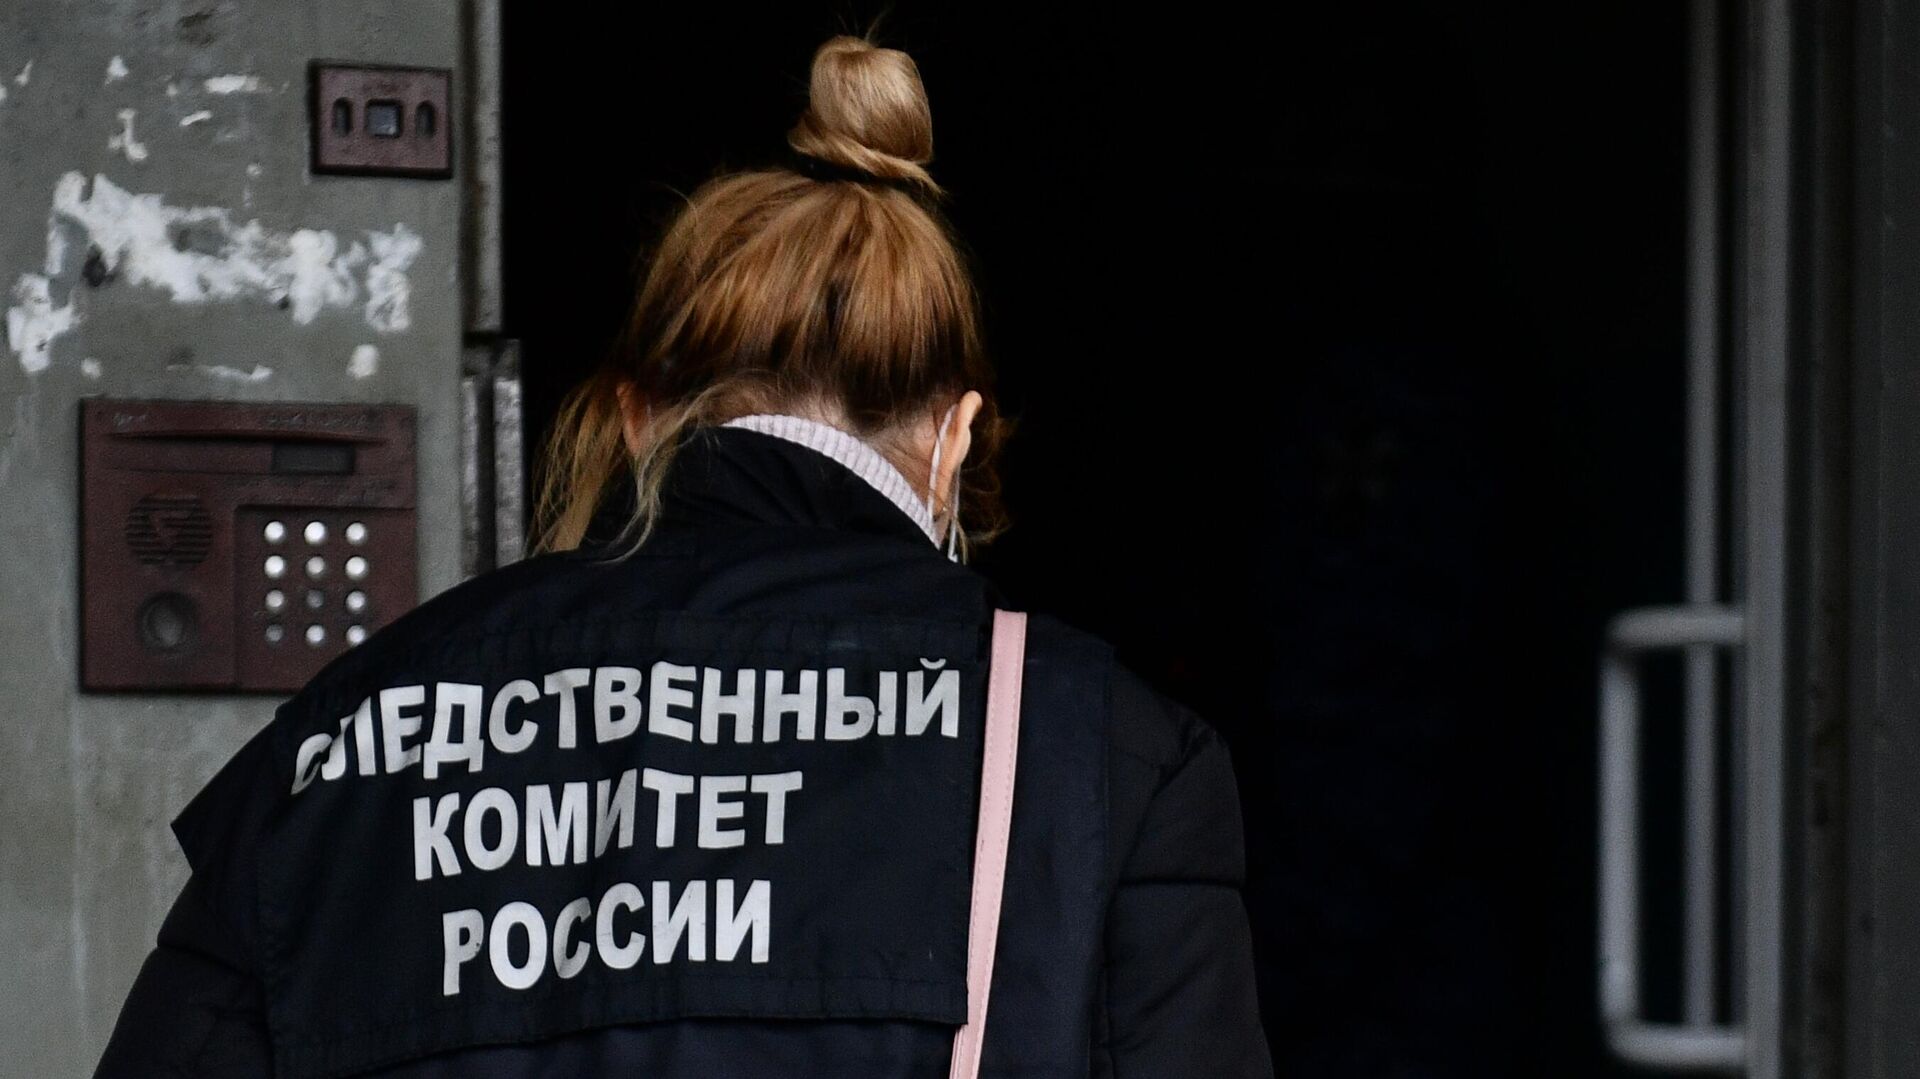 СК назвал причину смерти мумифицированной женщины в стрингах, найденной в отеле в Москве